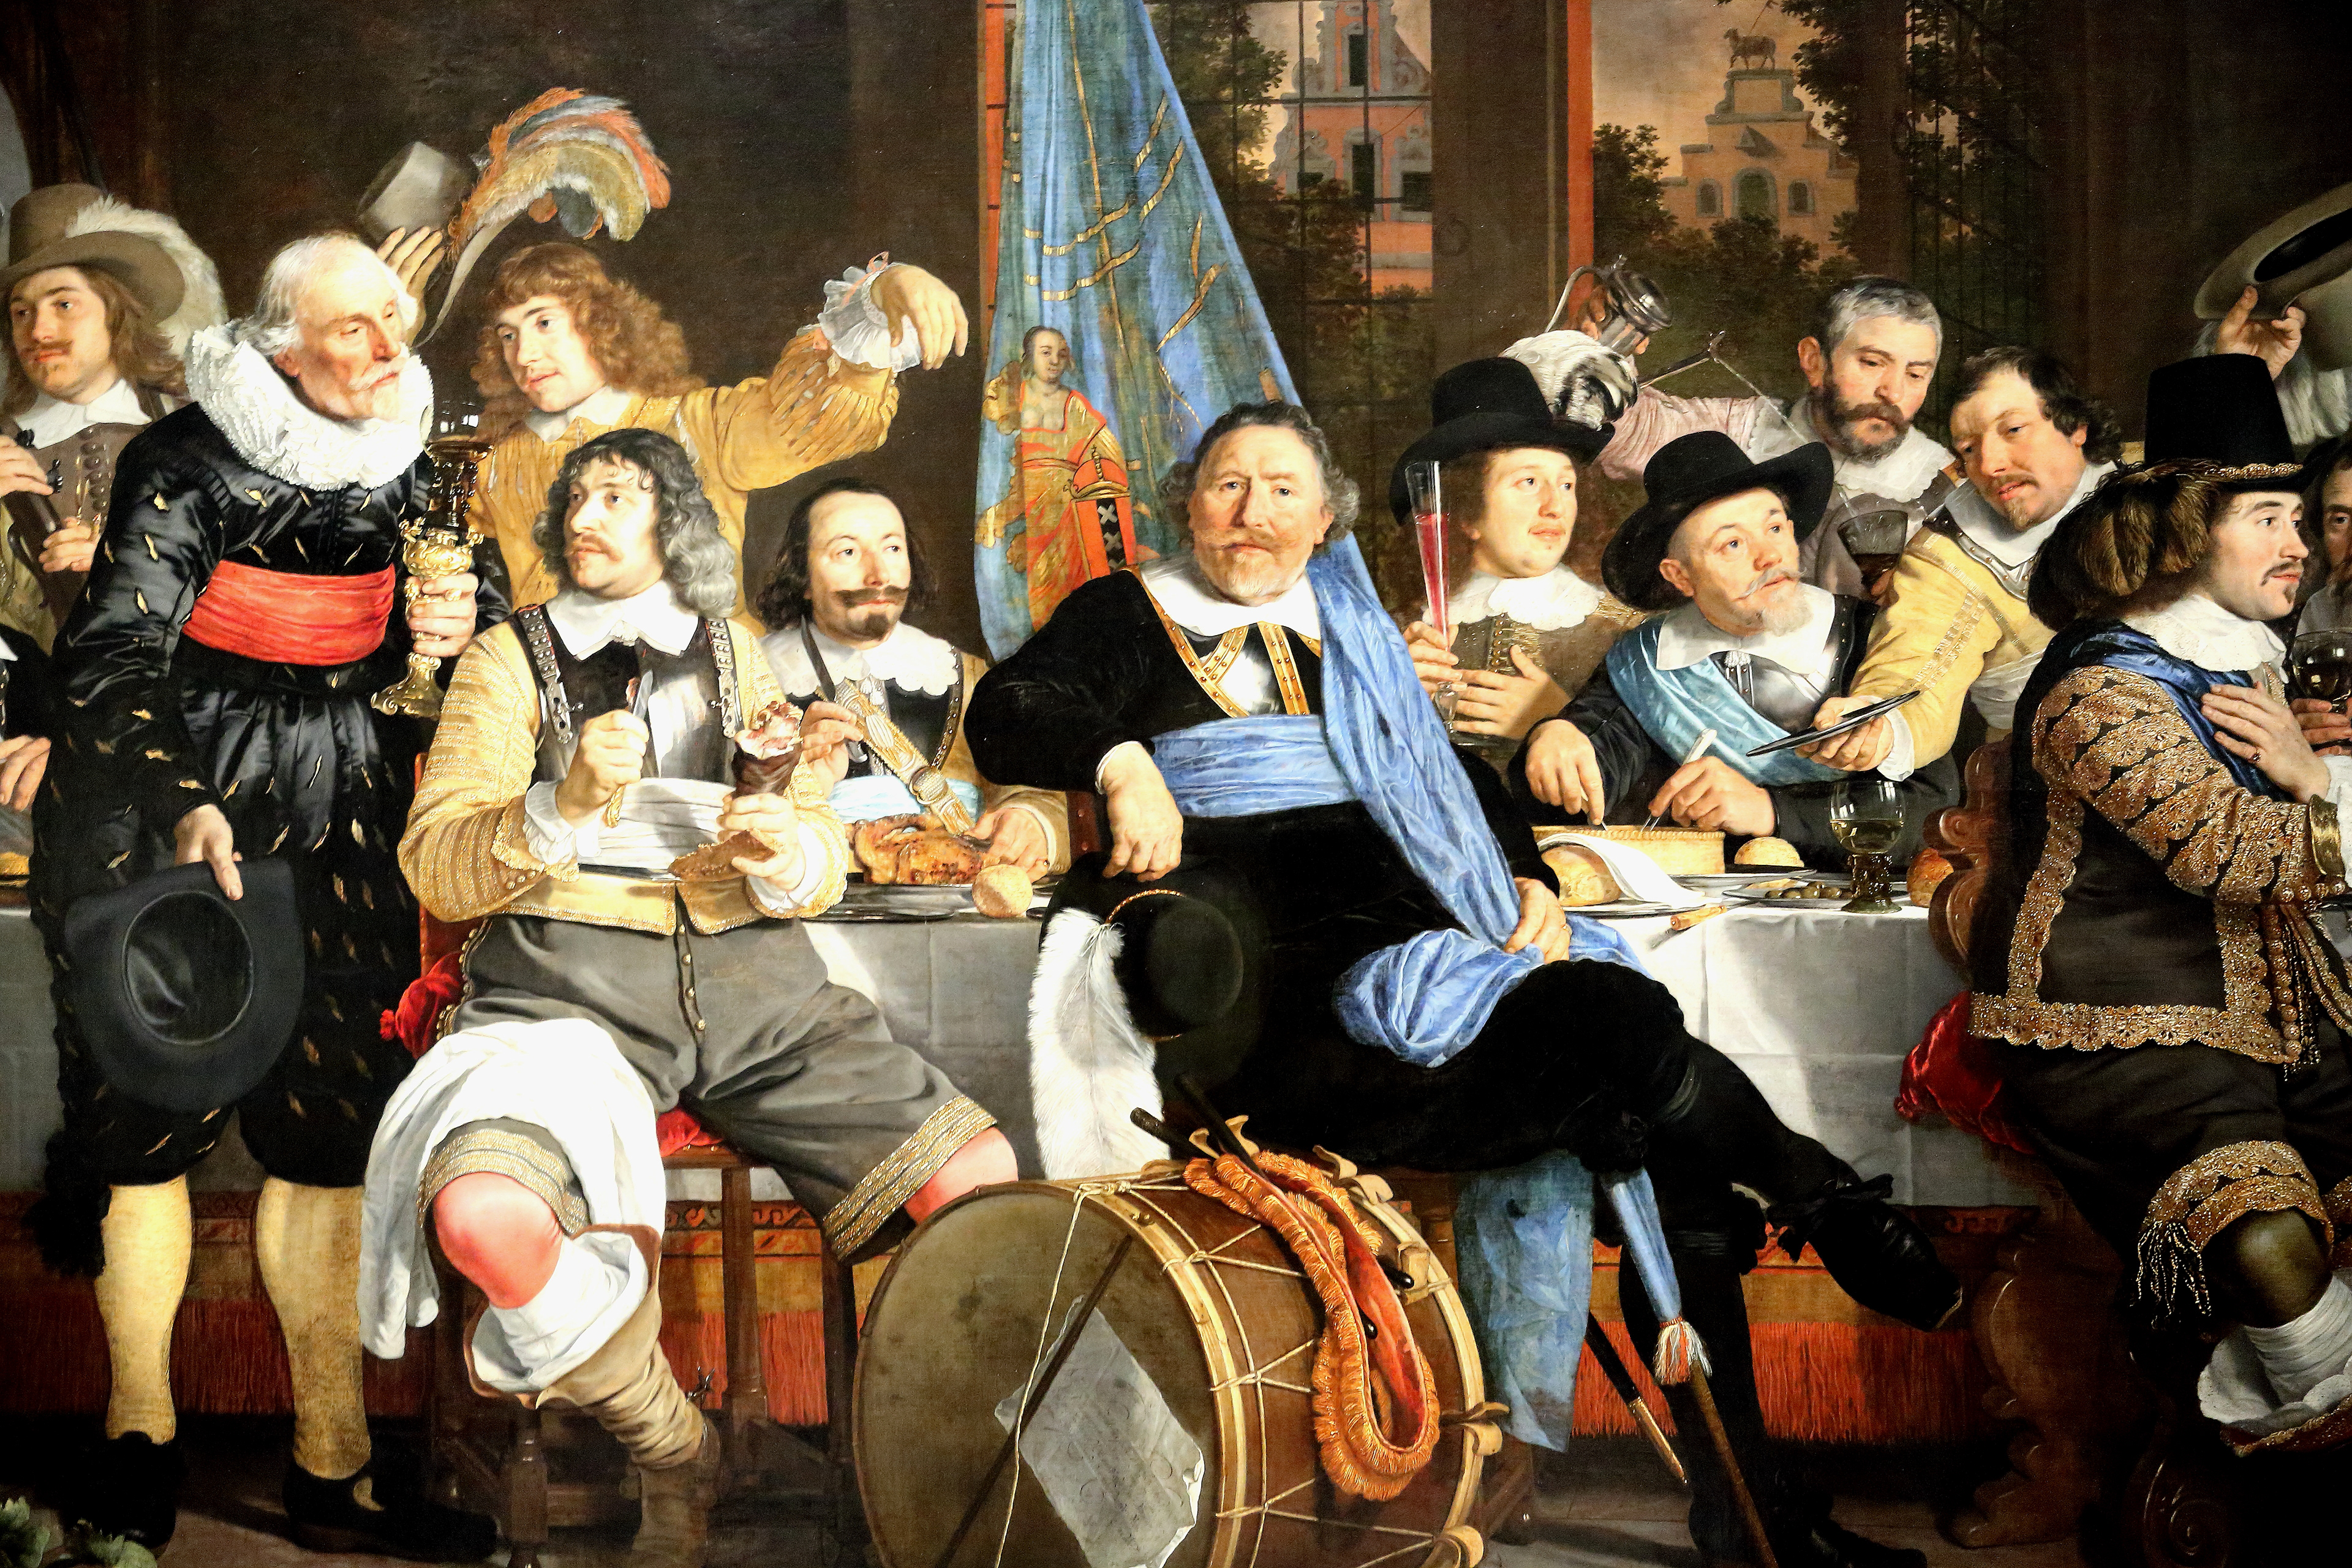 Начало 18 века в европе. Голландский групповой портрет Рембрандт. Рембрандт групповой портрет гильдии амстердамских Стрелков. Франс Хальс малые голландцы. Буржуазия 16 17 века Европа.